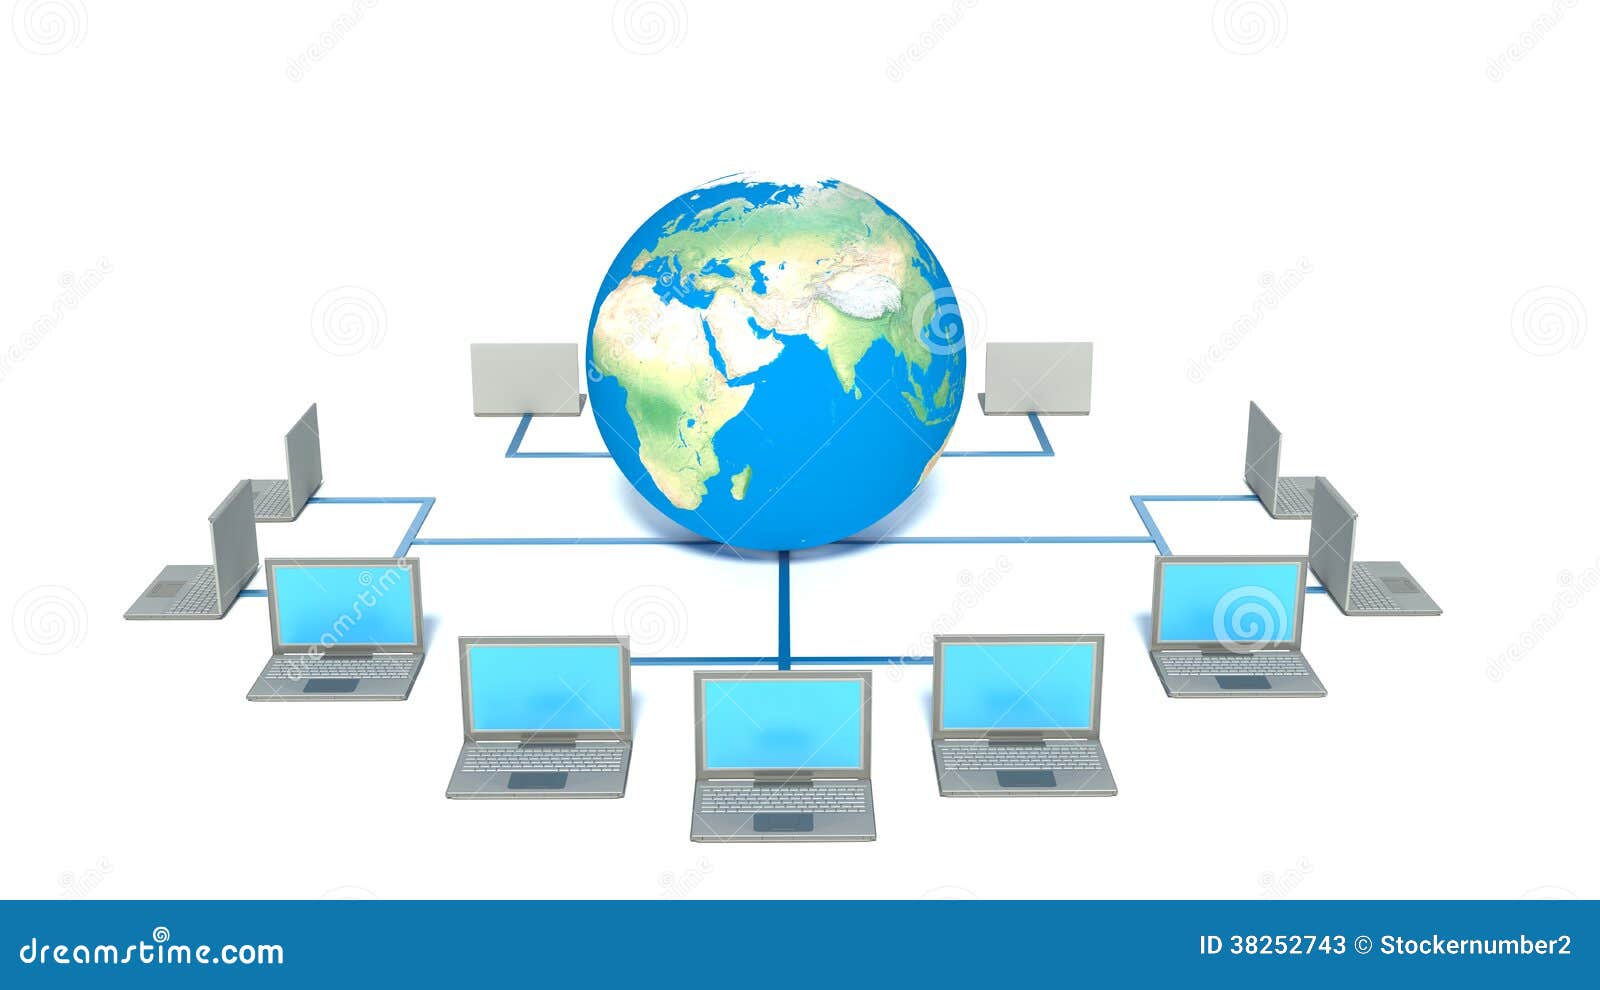 Всемирная компьютерная сеть интернет 9 класс босова. Глобальная компьютерная сеть. Стенд Глобальная компьютерная сеть. Глобал сеть. Страна Информатика картинки.